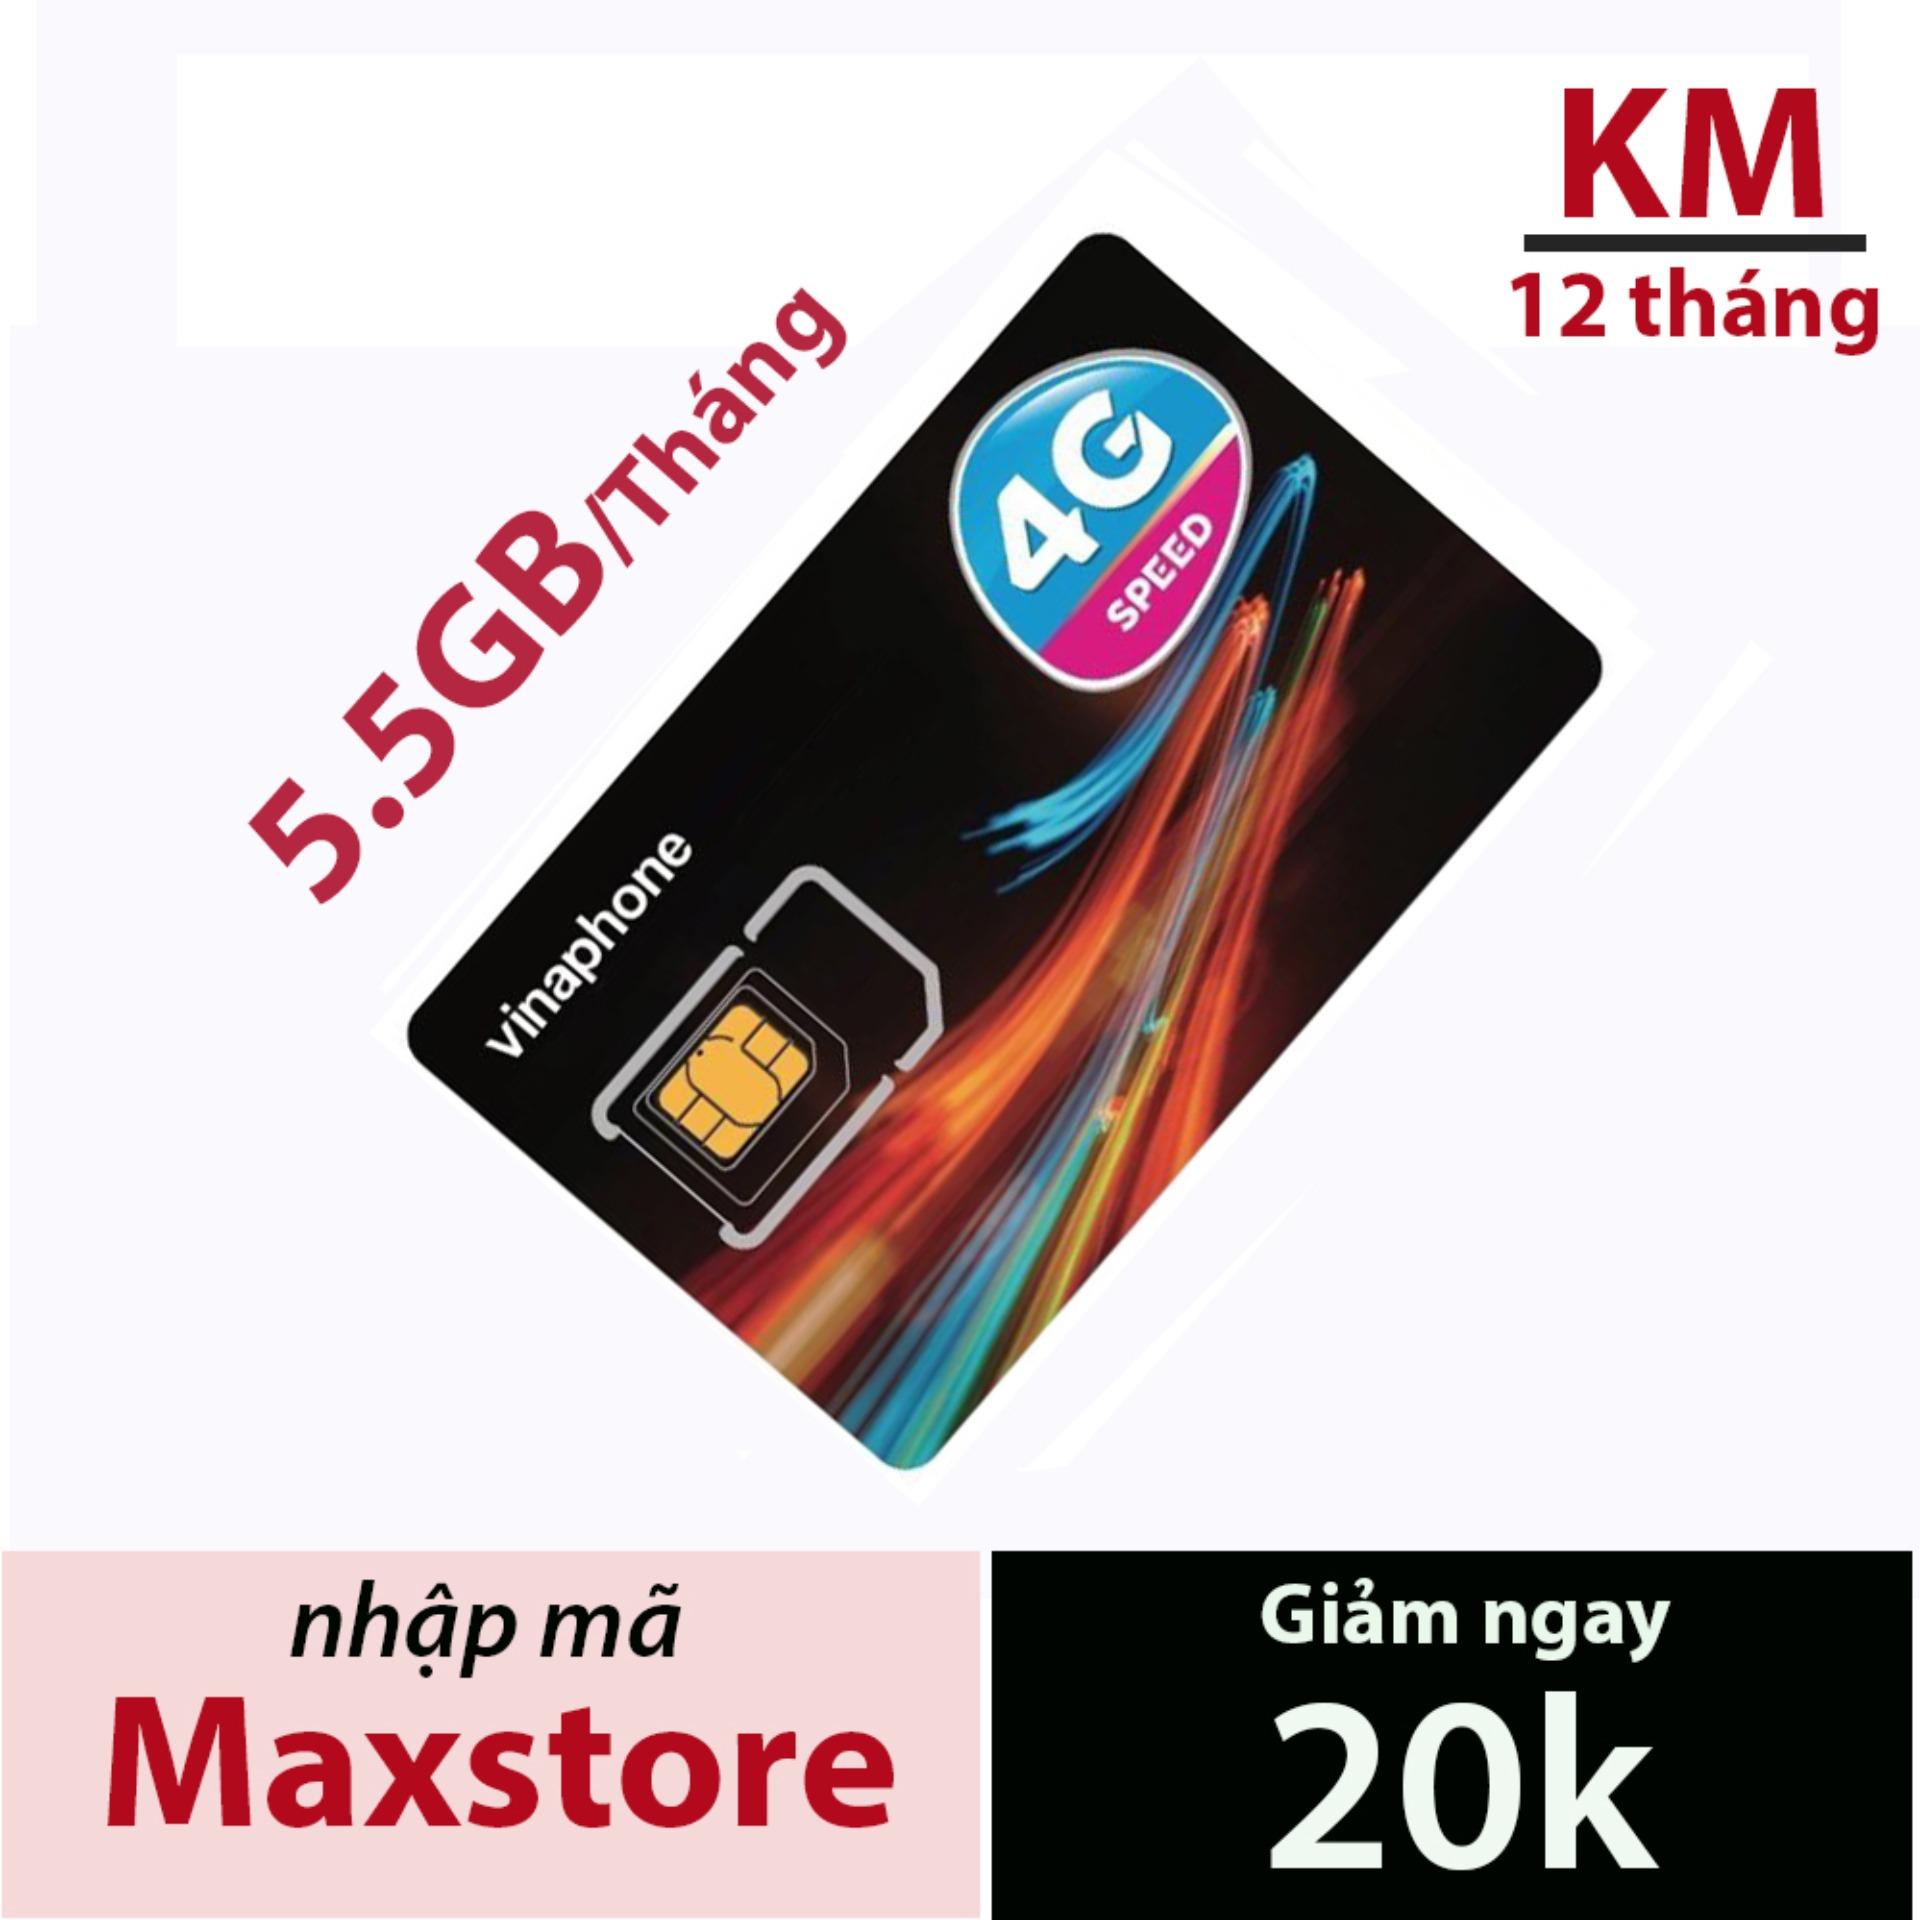 SIM 3G 4G VINAPHONE D500 5.5GB/1 THÁNG trọn gói 1 năm không nạp tiền từ maxstore.